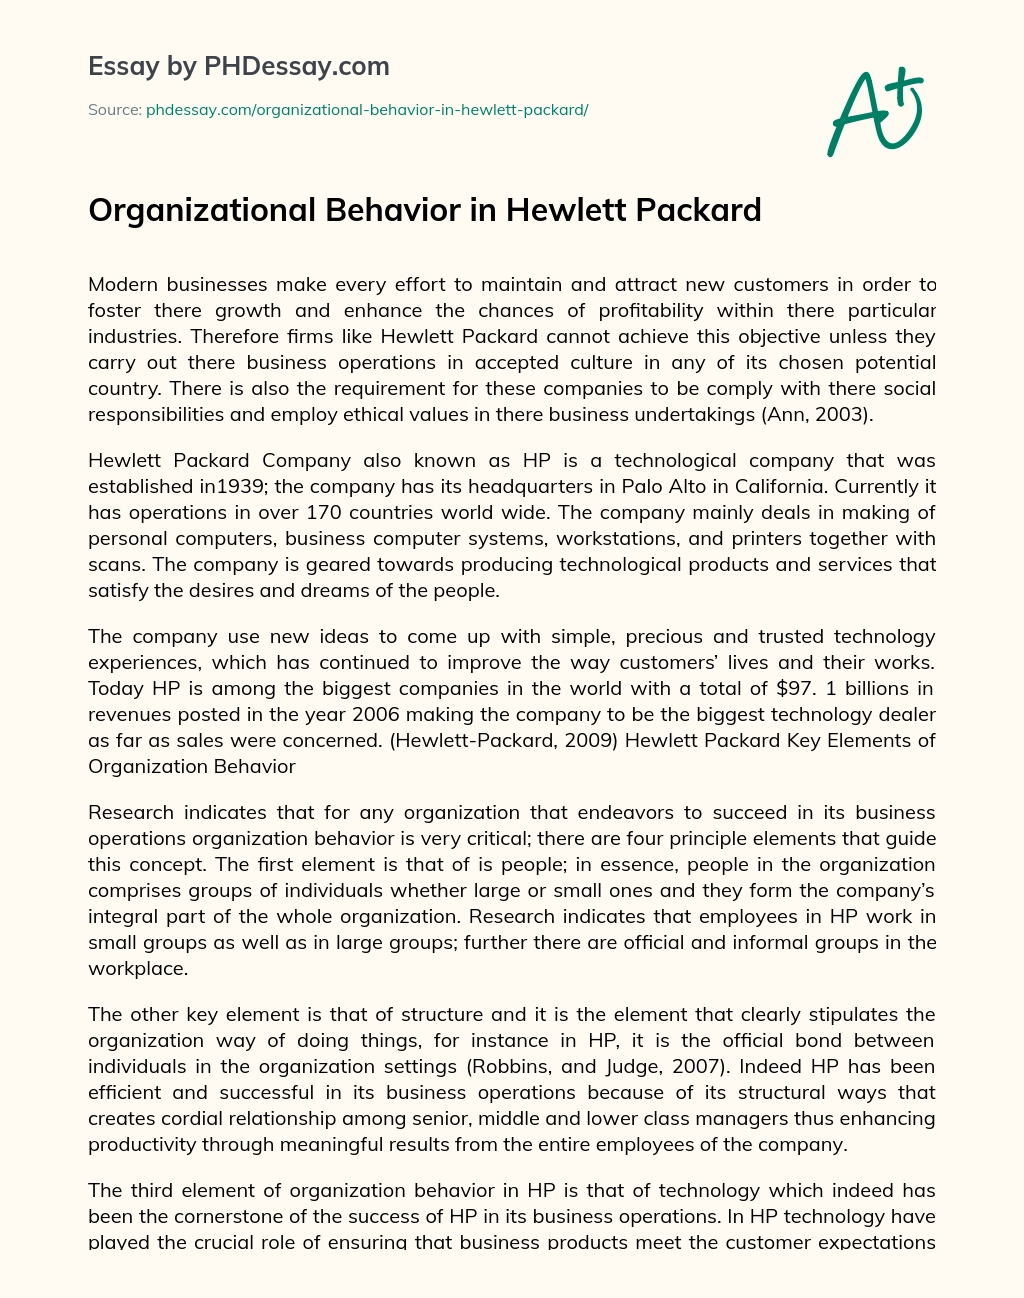 Organizational Behavior in Hewlett Packard essay